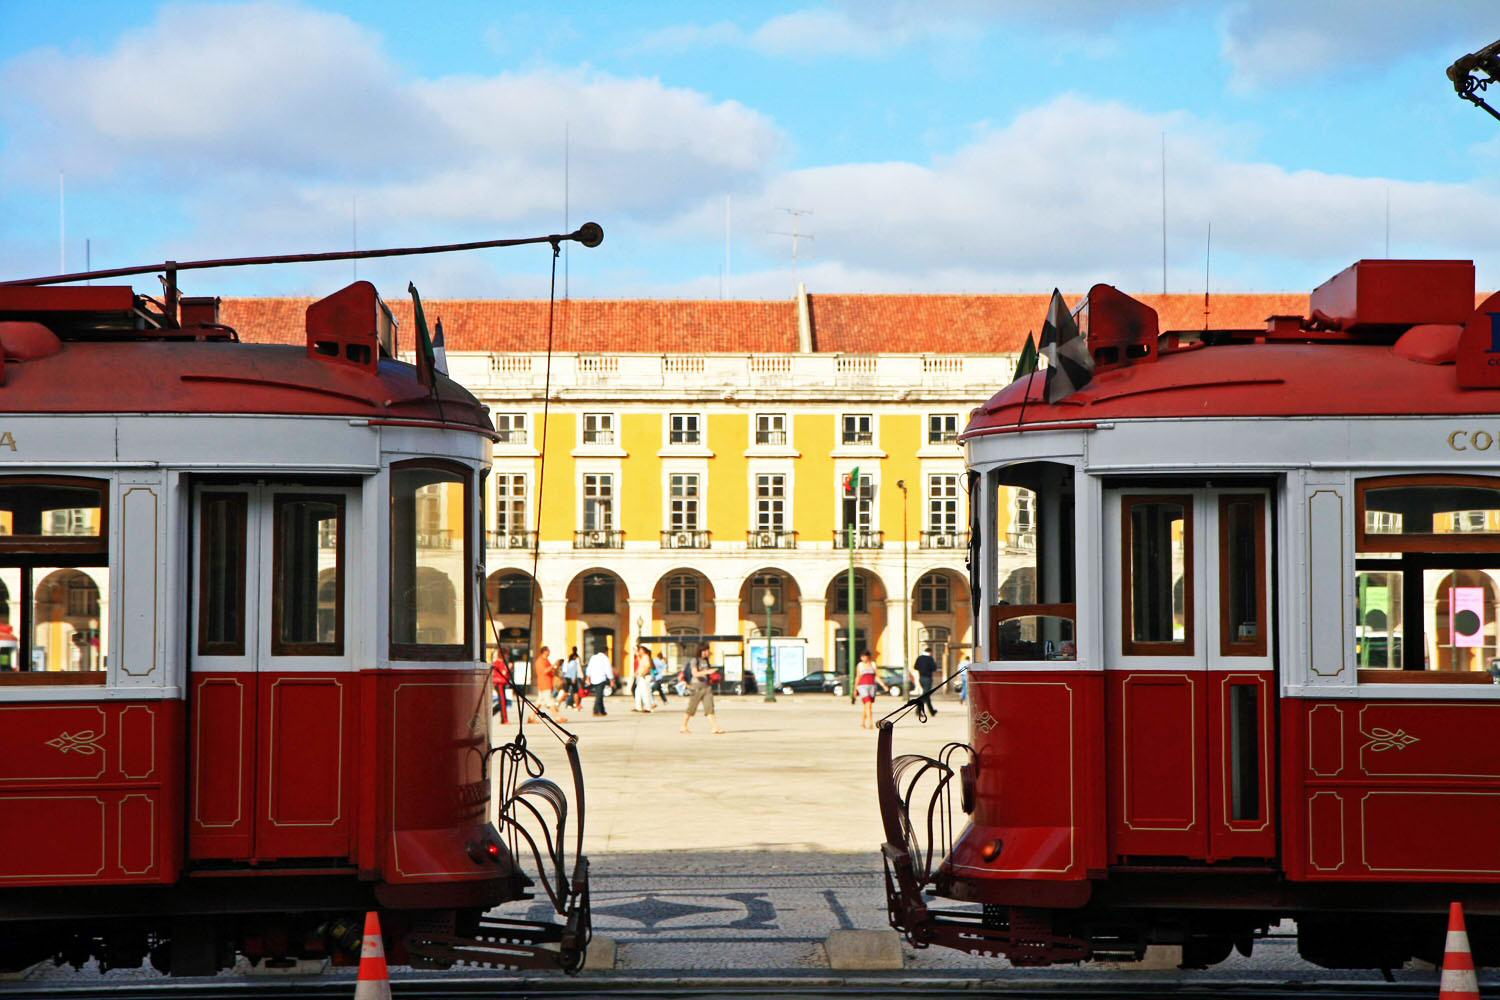 Tranvias turísticos de Lisboa aparcados en la plaza del comercio